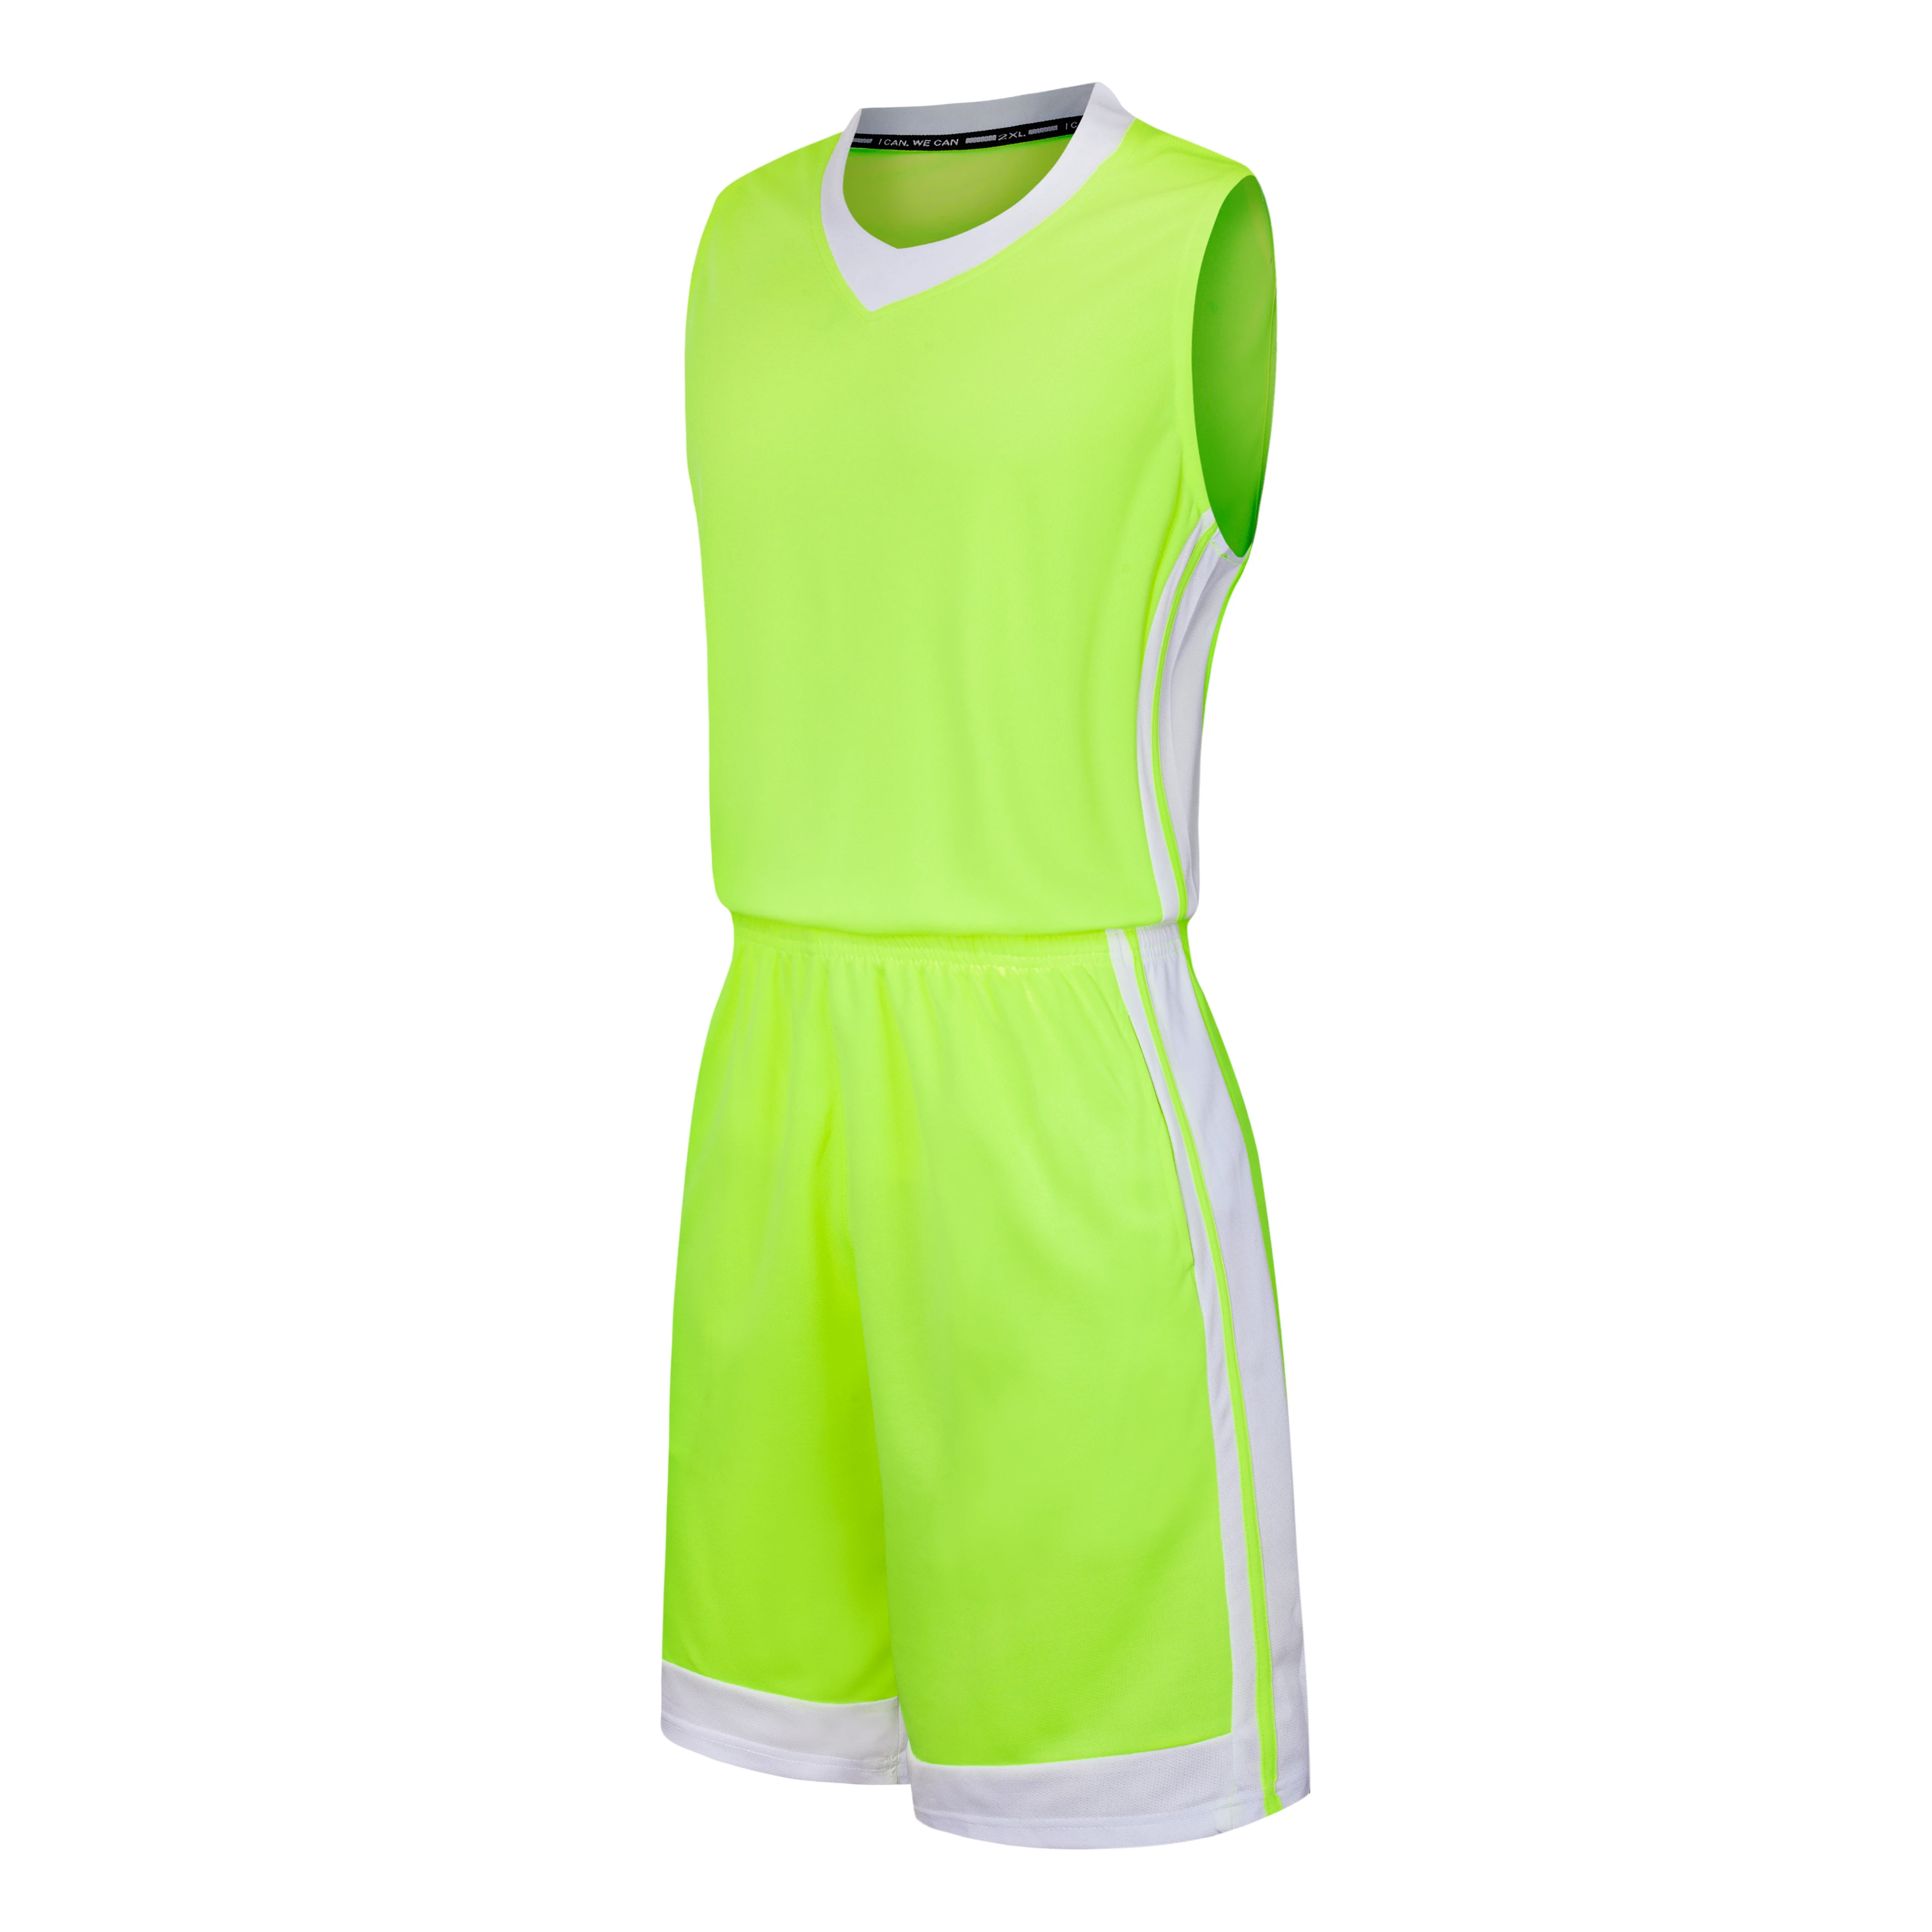 Баскетбольные майки для взрослых, спортивные наборы, дышащие ткани, мужская и женская футболка без рукавов, тренировочная одежда, фитнес-зал, 9 цветов - Цвет: Fluorescent green